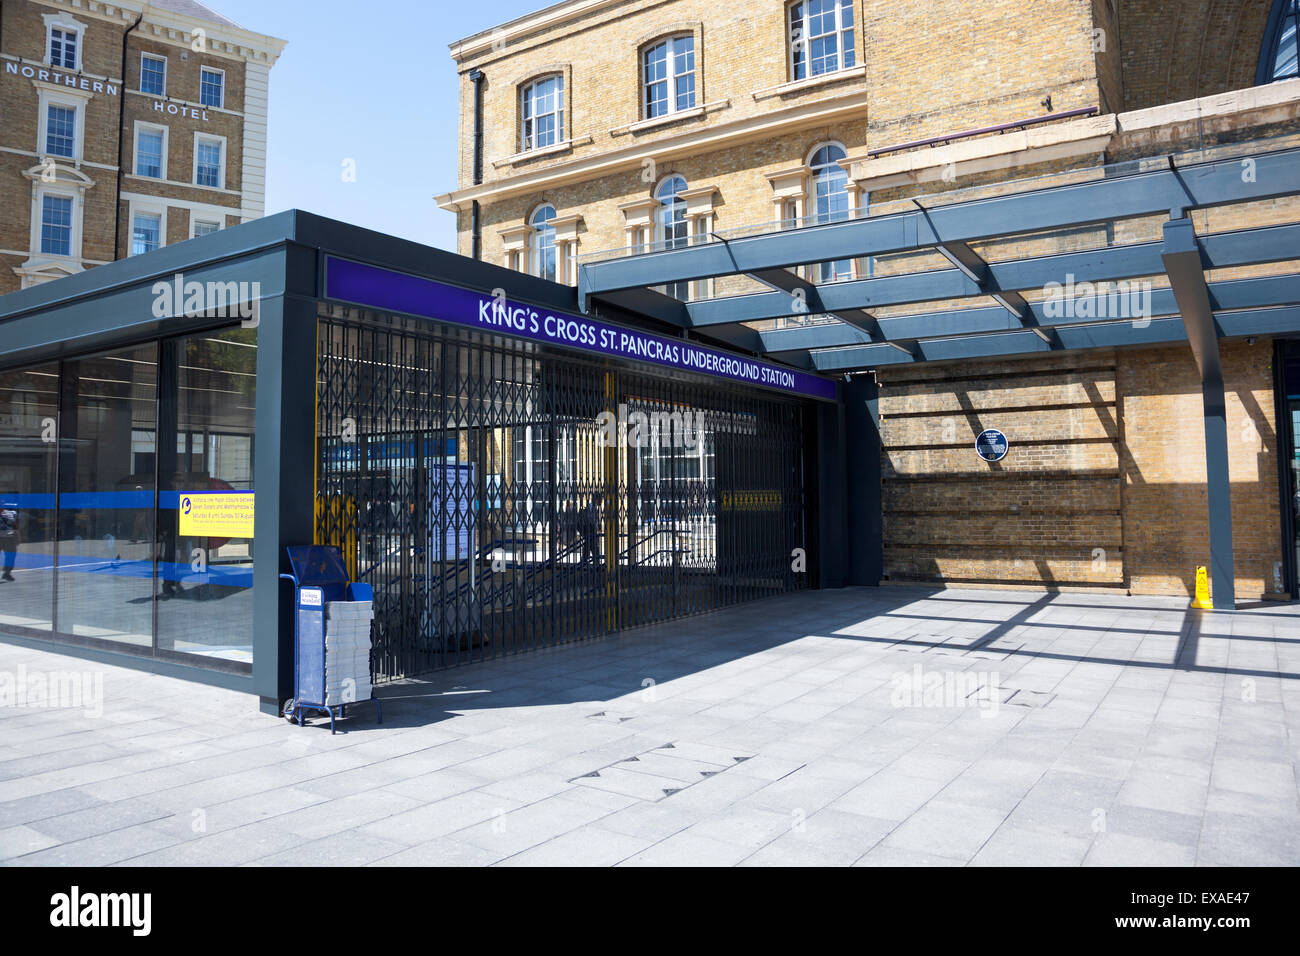 Londres, Royaume-Uni. 9 juillet 2015 - La plus grande grève dans le métro de Londres en 13 ans est à l'origine de commuter le chaos dans la ville. L'habituellement très occupés à King's Cross St Pancras a été laissé complètement vide. Credit : Nathaniel Noir/Alamy Live News Banque D'Images